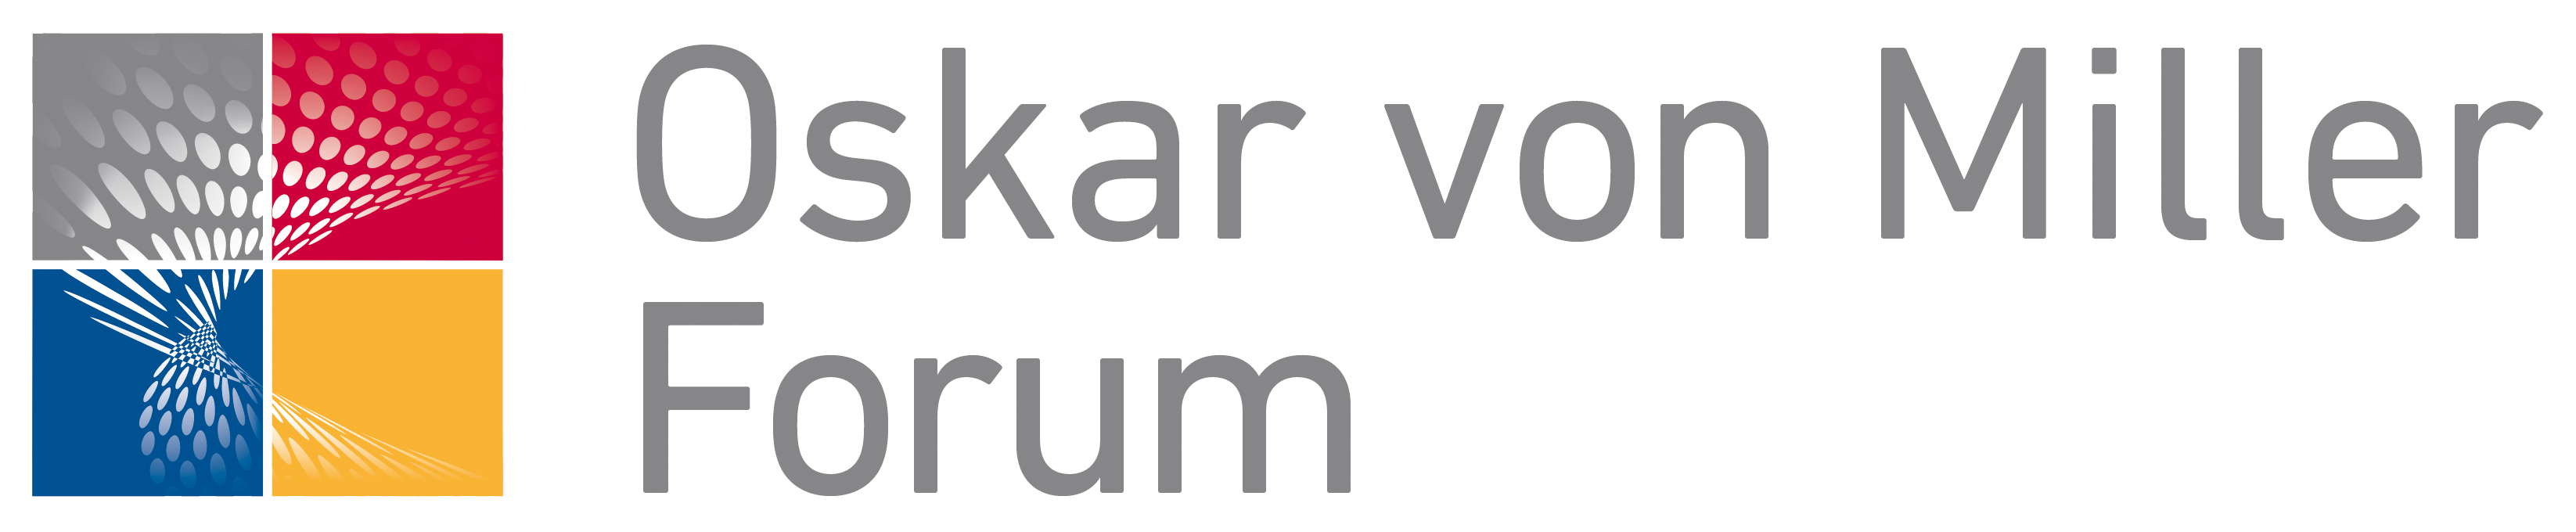 OskarvonMiller_Logo